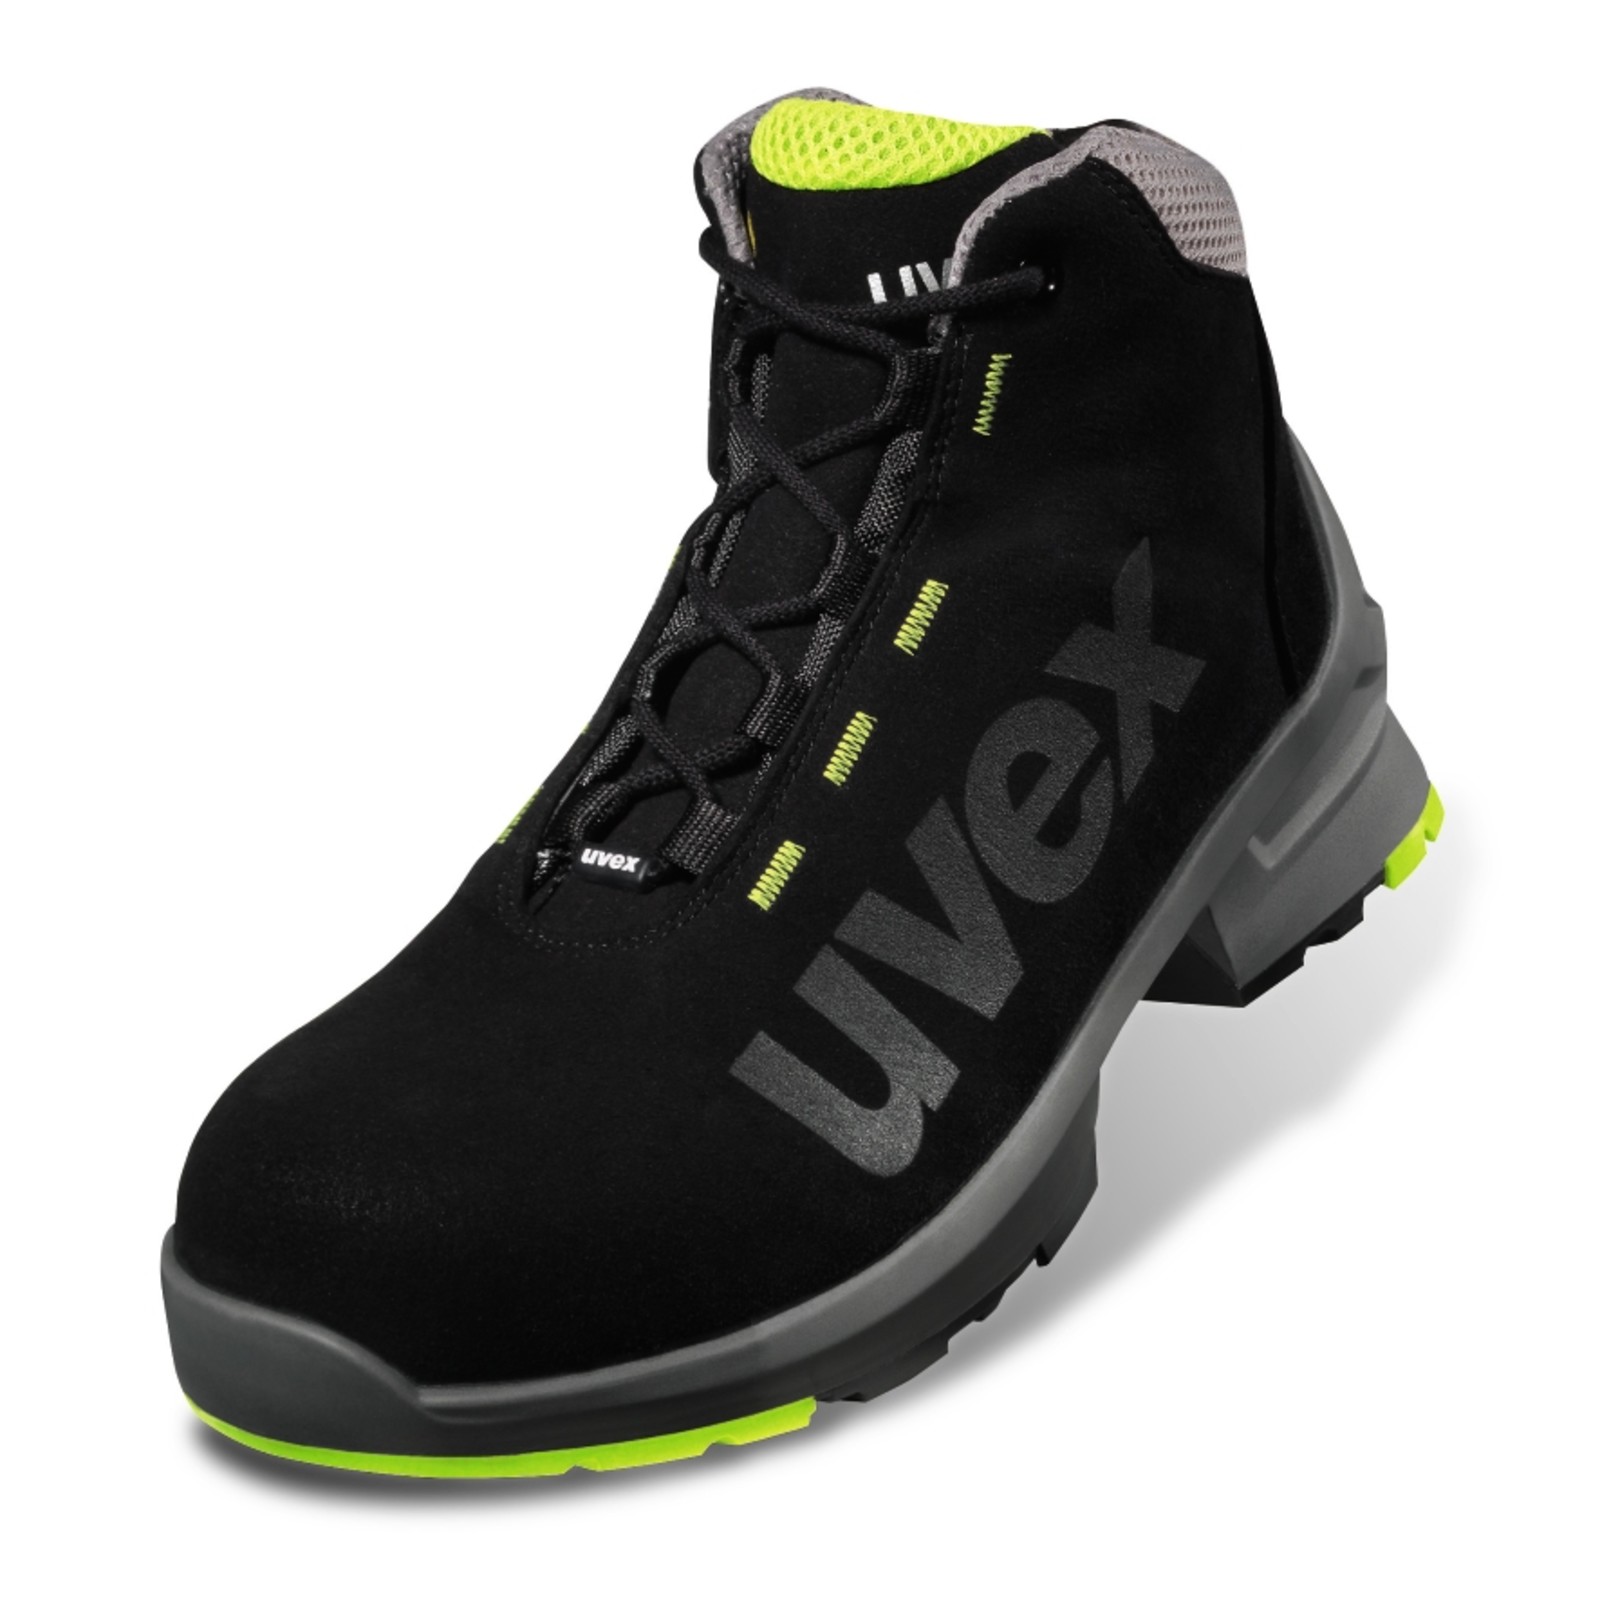 Pracovná obuv Uvex 1 S2 - veľkosť: 49, farba: čierna